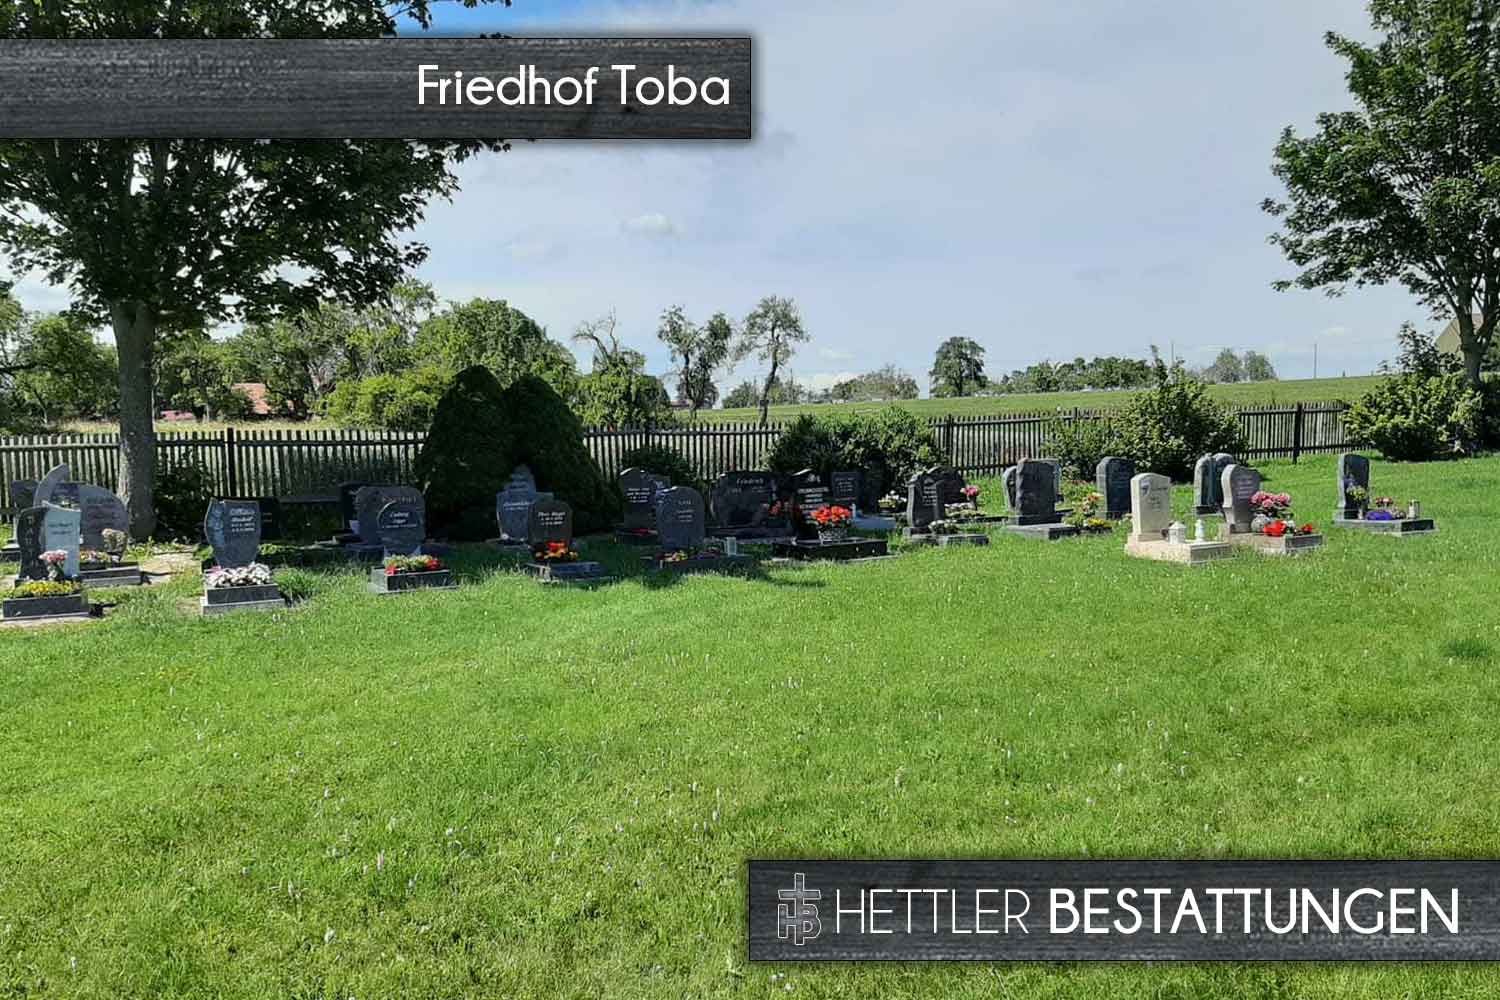 Friedhof in Toba. Ihr Ort des Abschieds mit Hettler Bestattungen.